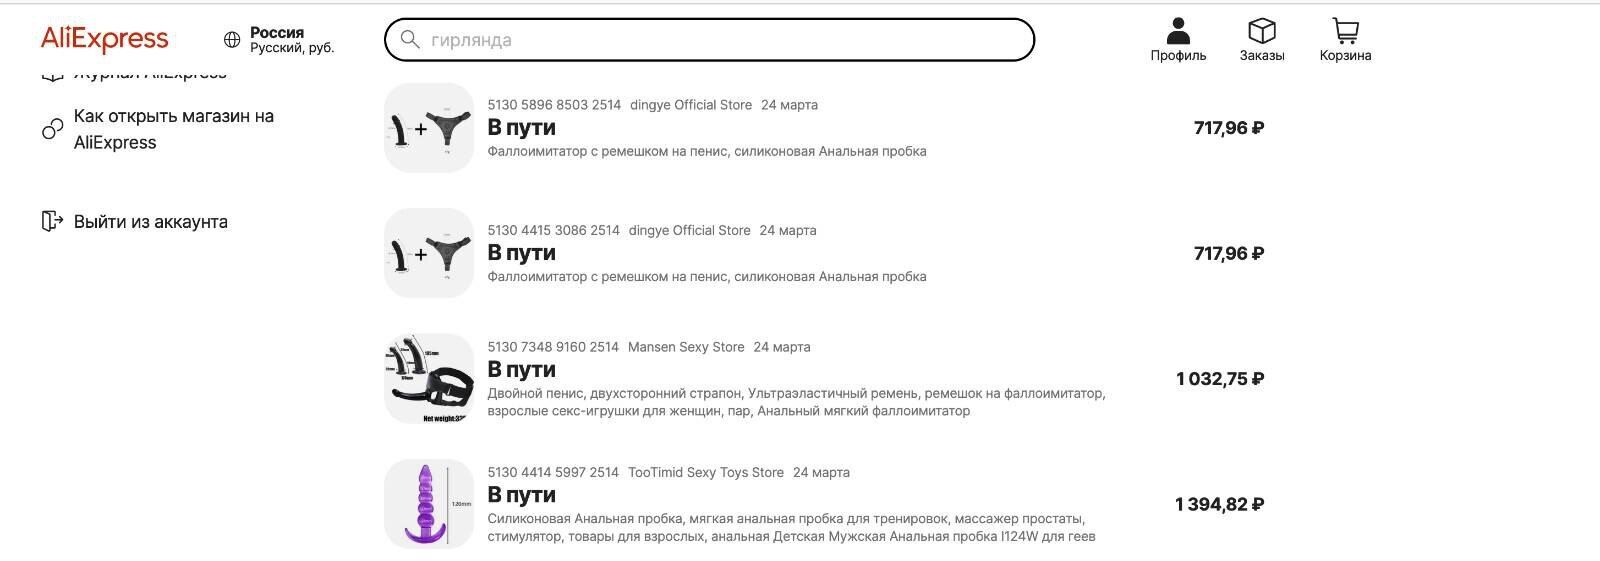 Українські хакери зламали акаунт друга Татарського й замість дронів купили на $25 тис. секс-іграшок на AliExpress. Фото